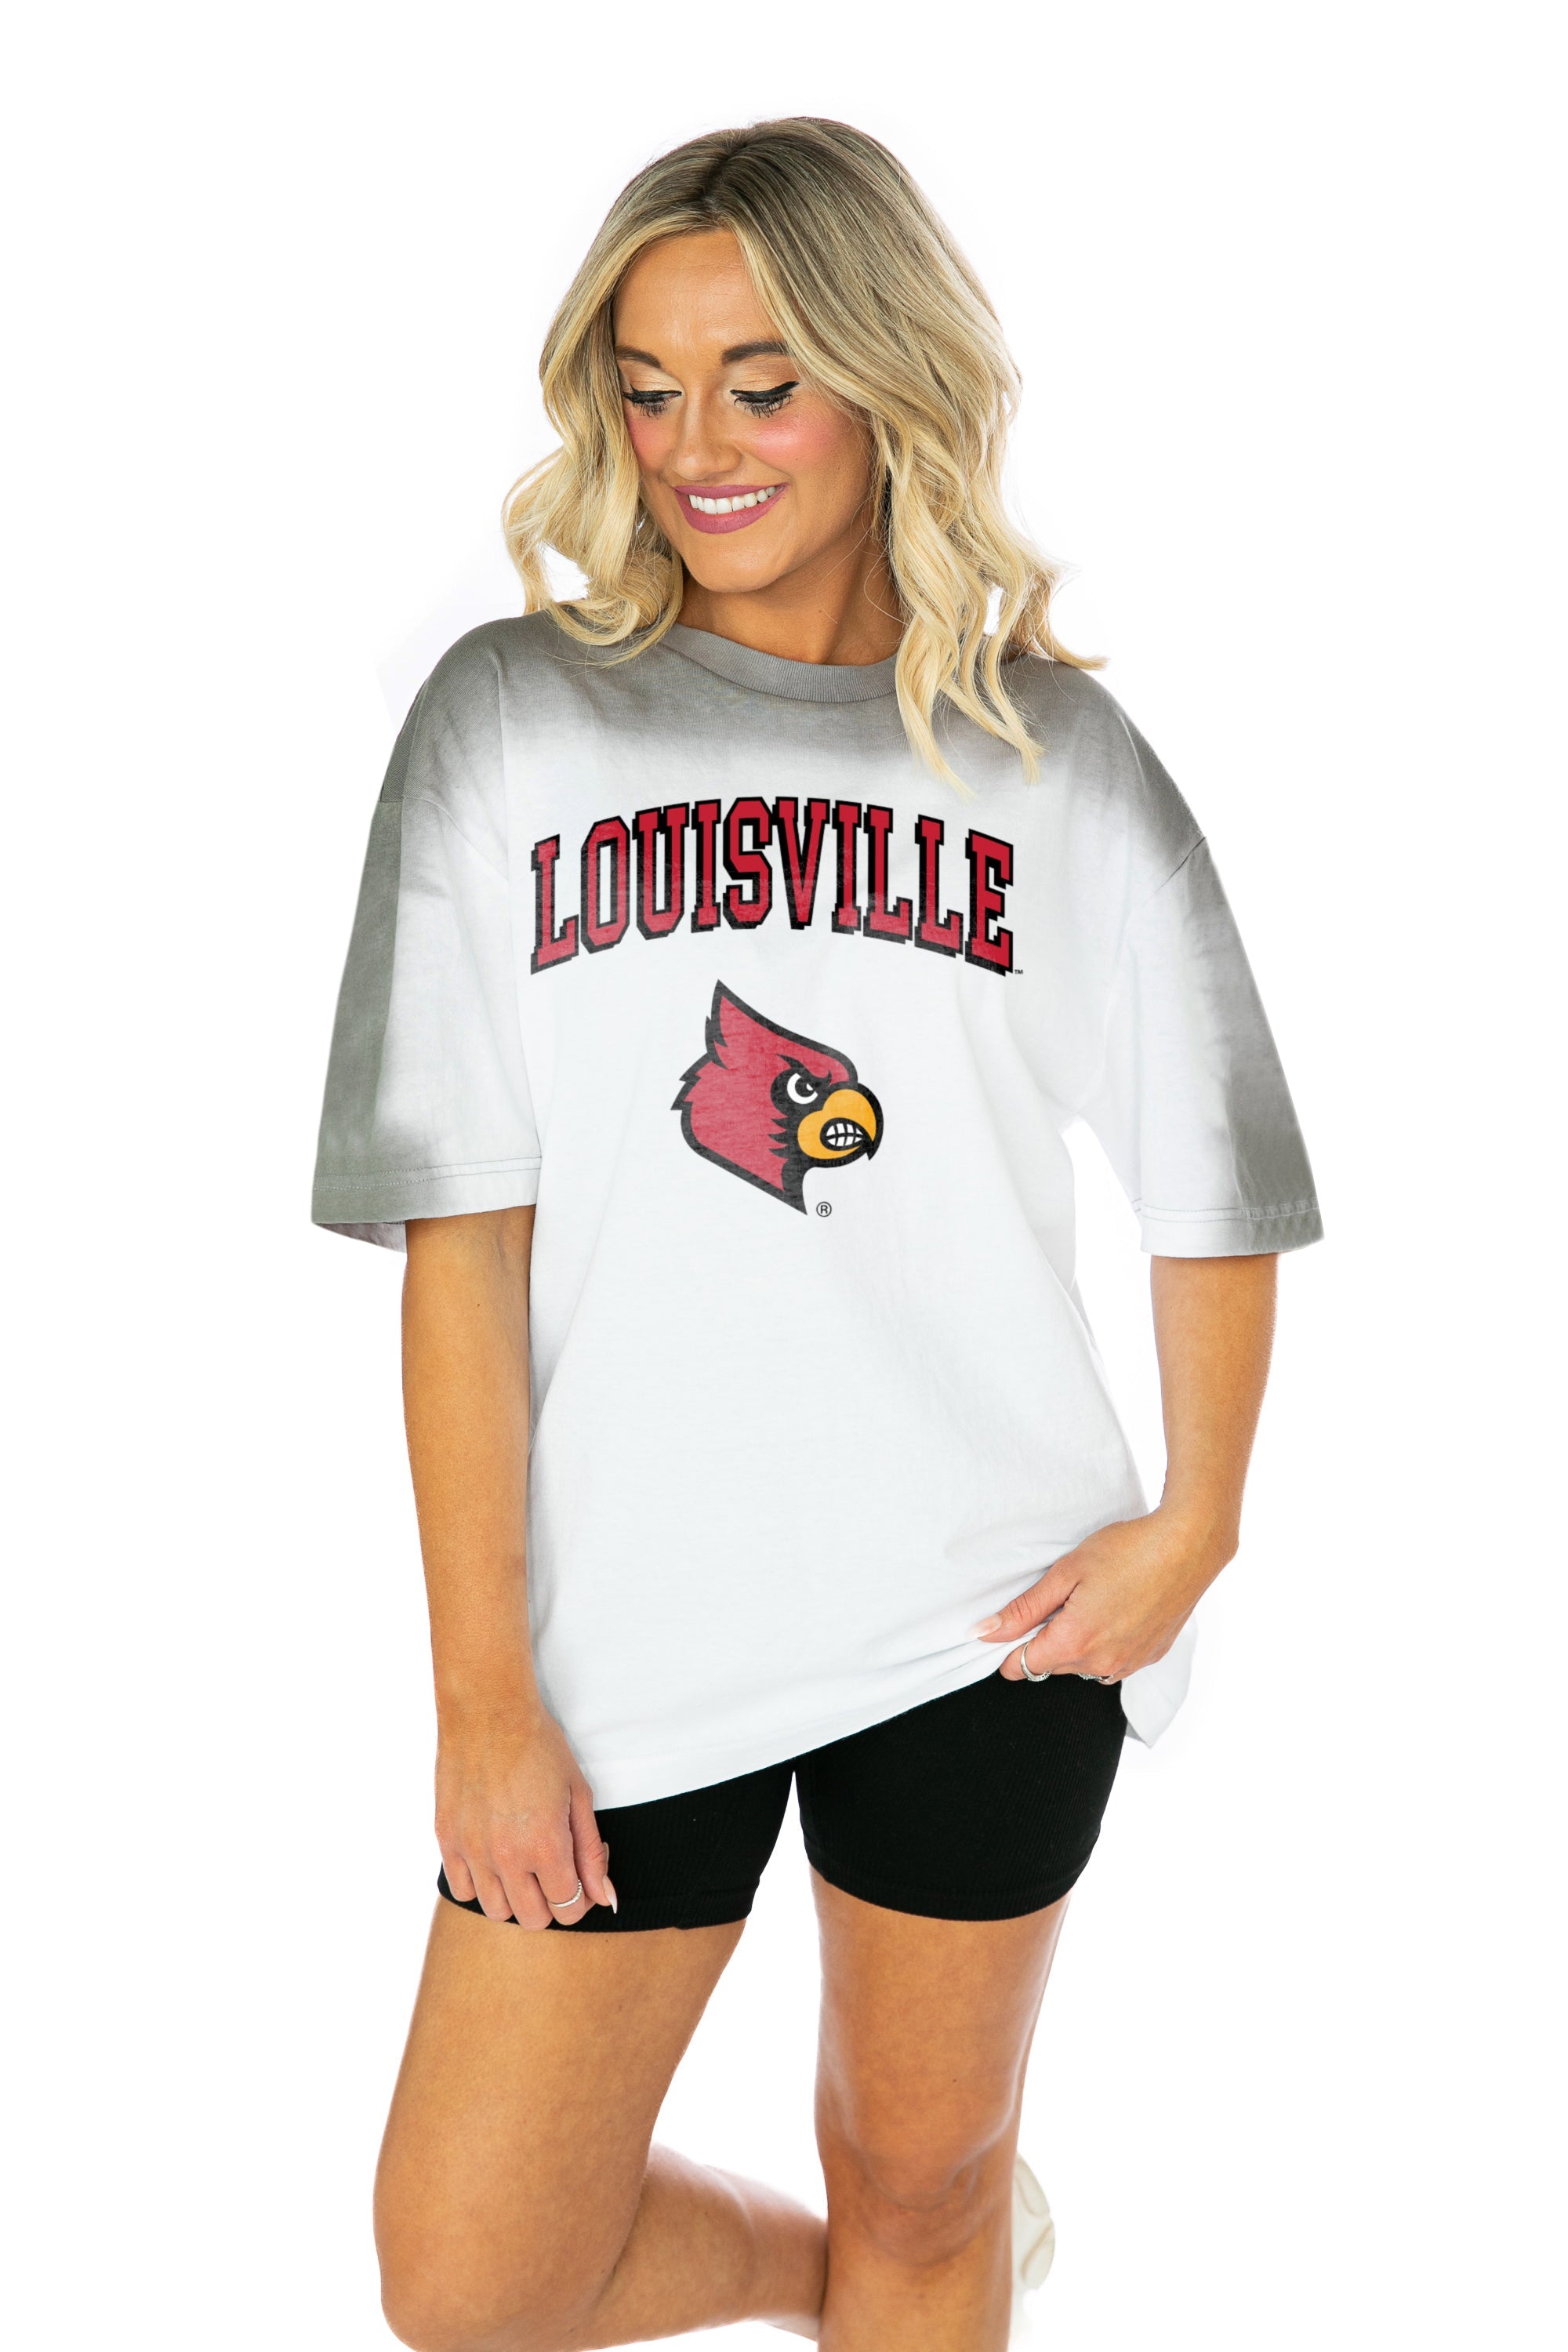 NCAA Louisville Cardinals Women's Crew Neck Fleece Sweatshirt - S